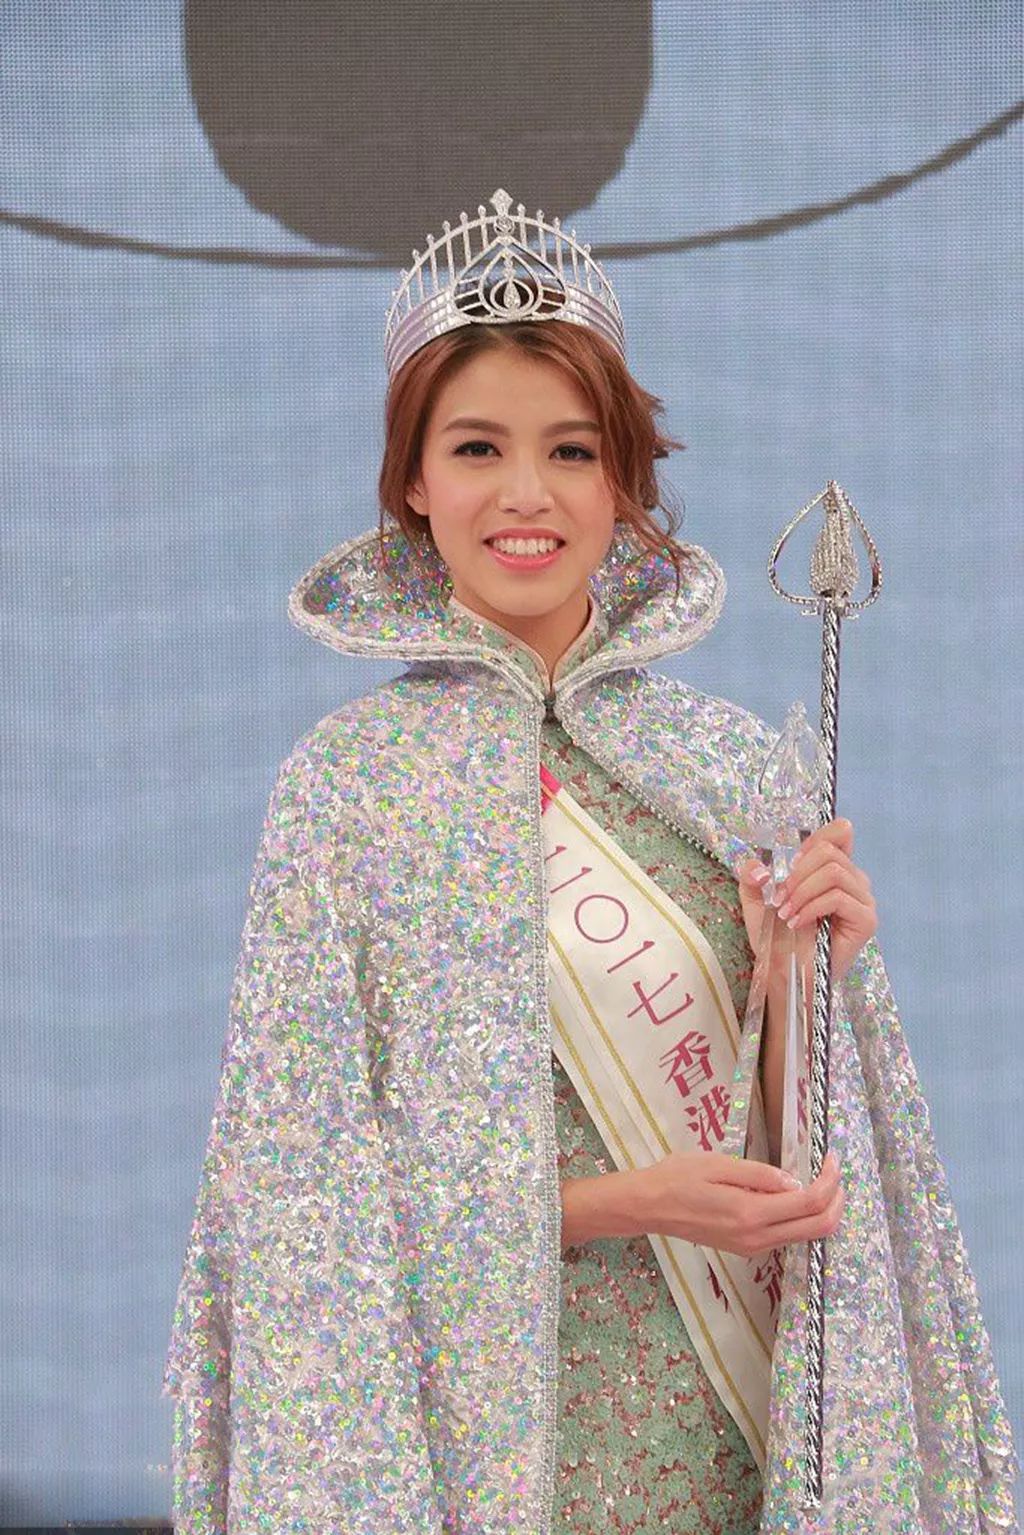 2017年雷庄儿获得港姐冠军和最上镜小姐.2018年陈晓华夺冠加冕.